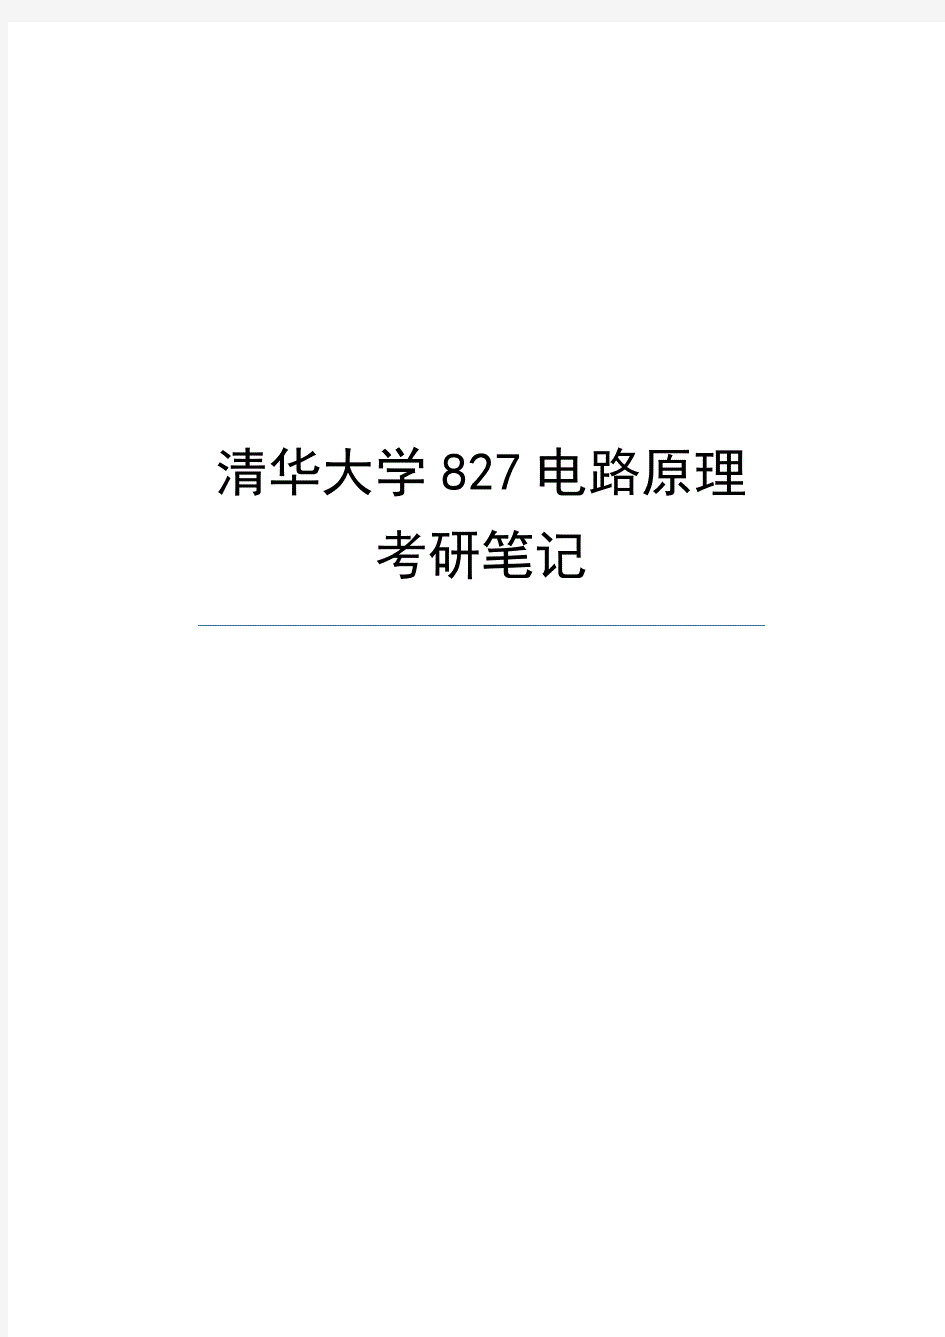  清华大学827电路原理考研笔记 .pdf